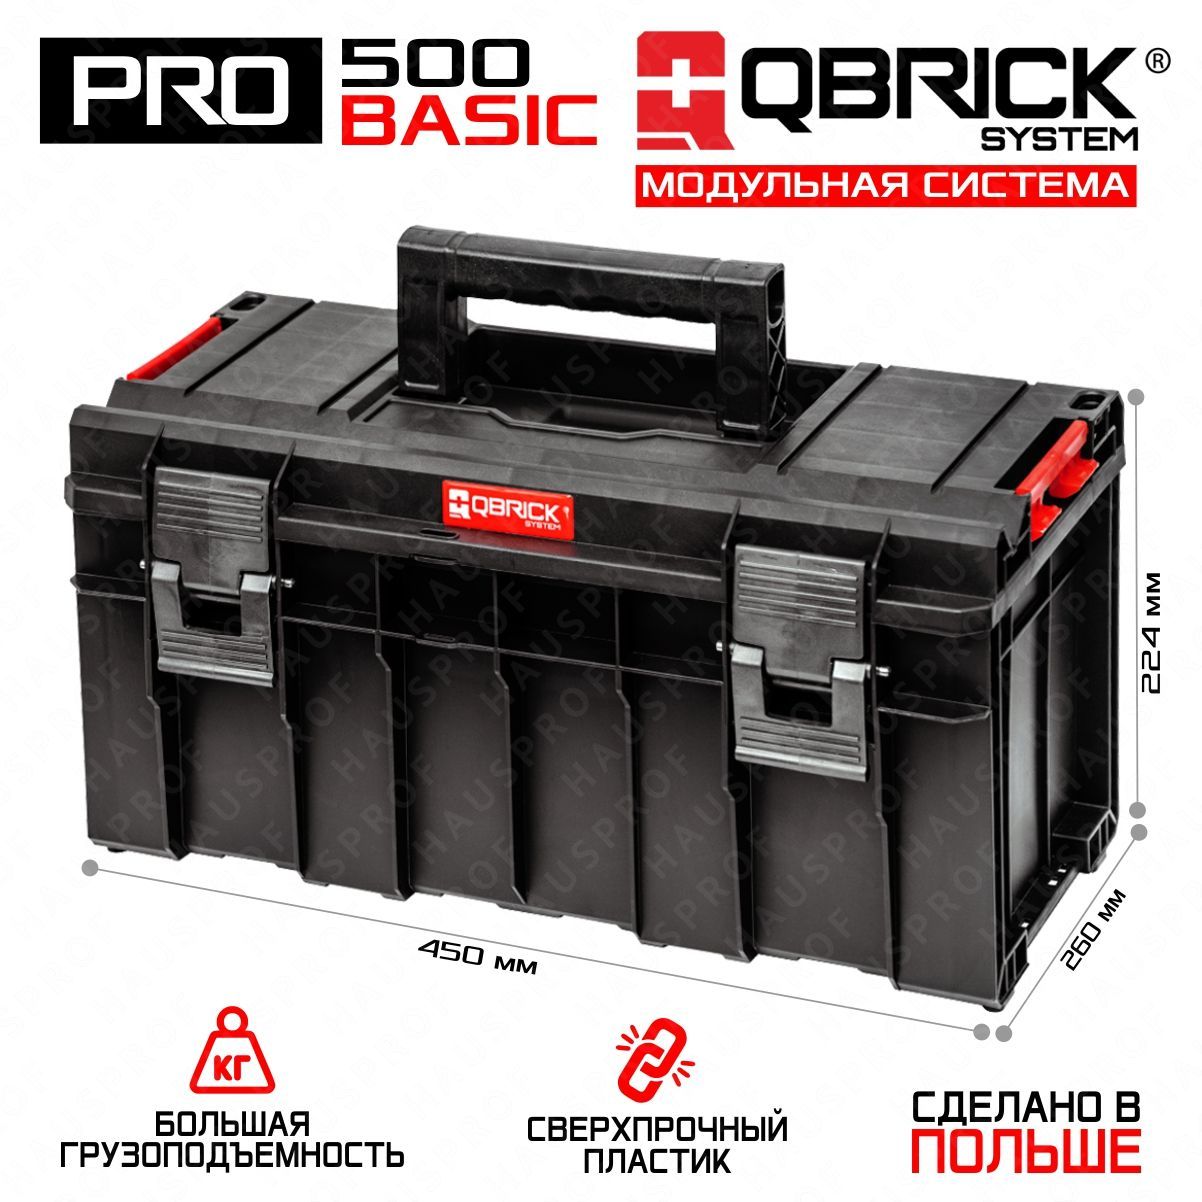 Ящик для хранения и переноски инструментов Qbrick System PRO 500 Basic